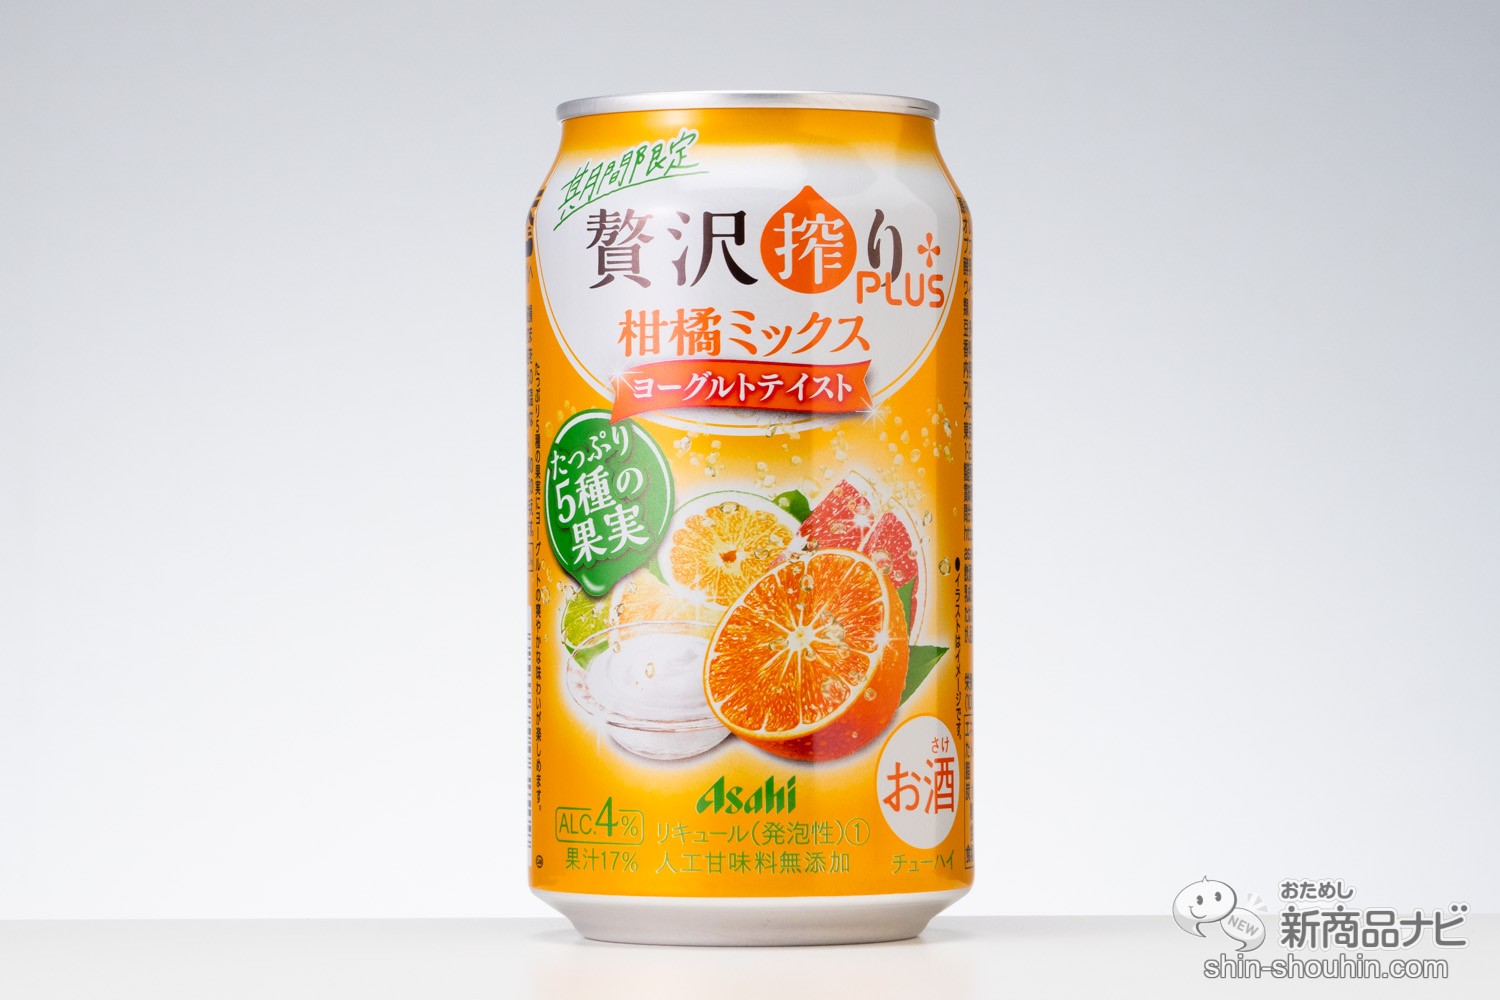 おためし新商品ナビ » Blog Archive » 【おすすめ】デザート系缶 